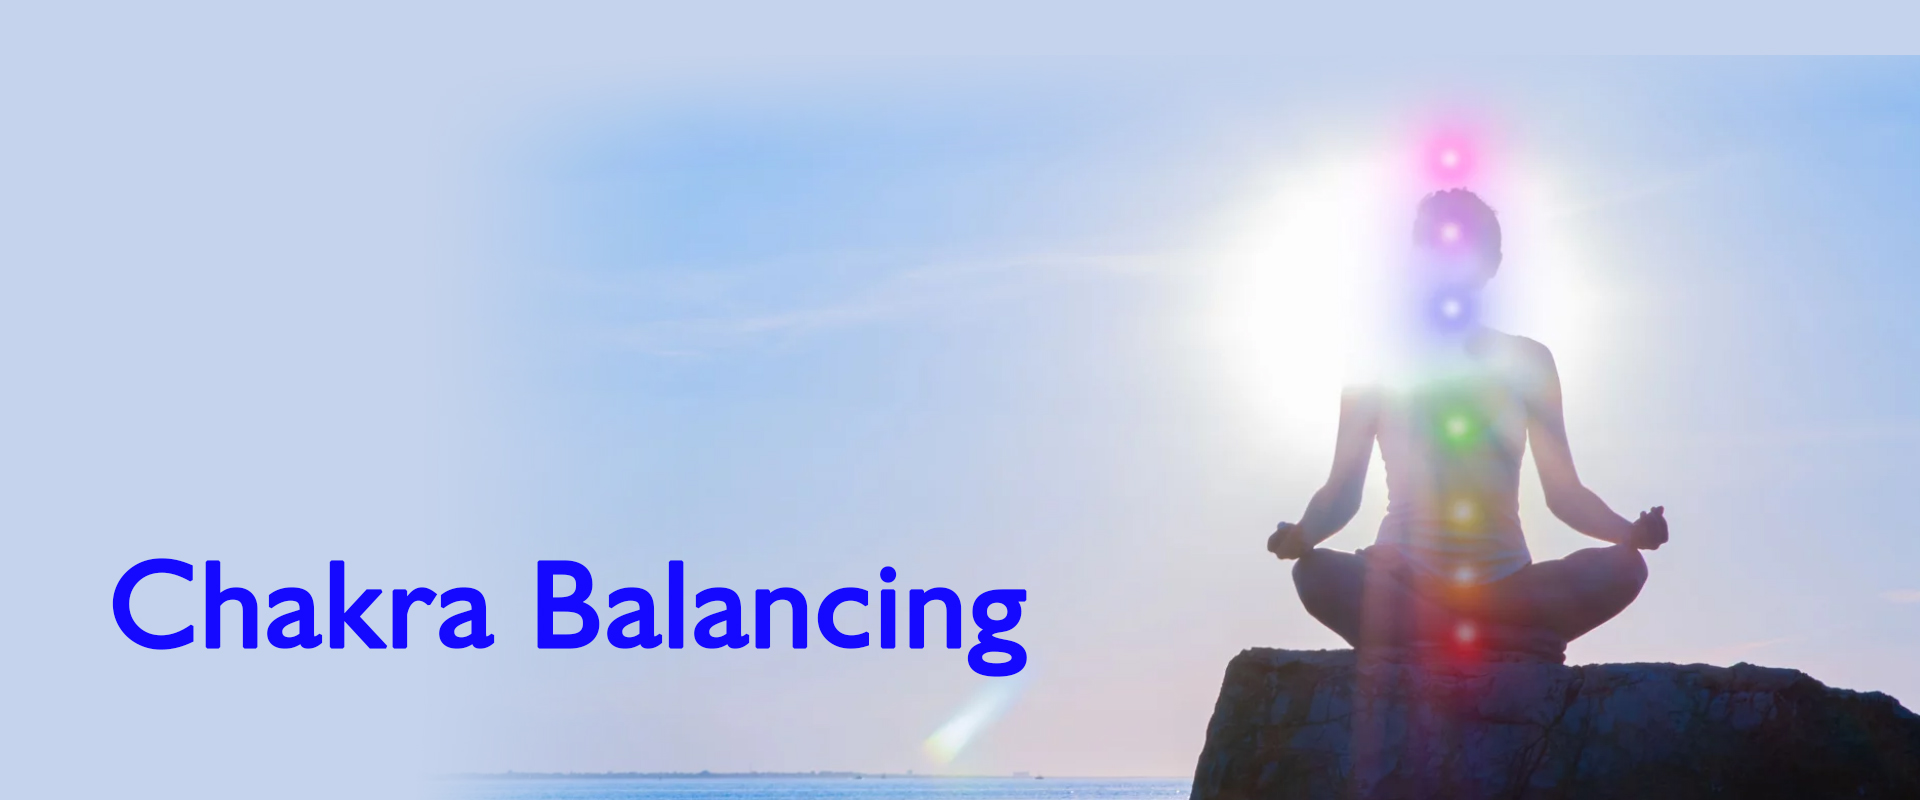 Chakra Balancing banner 6